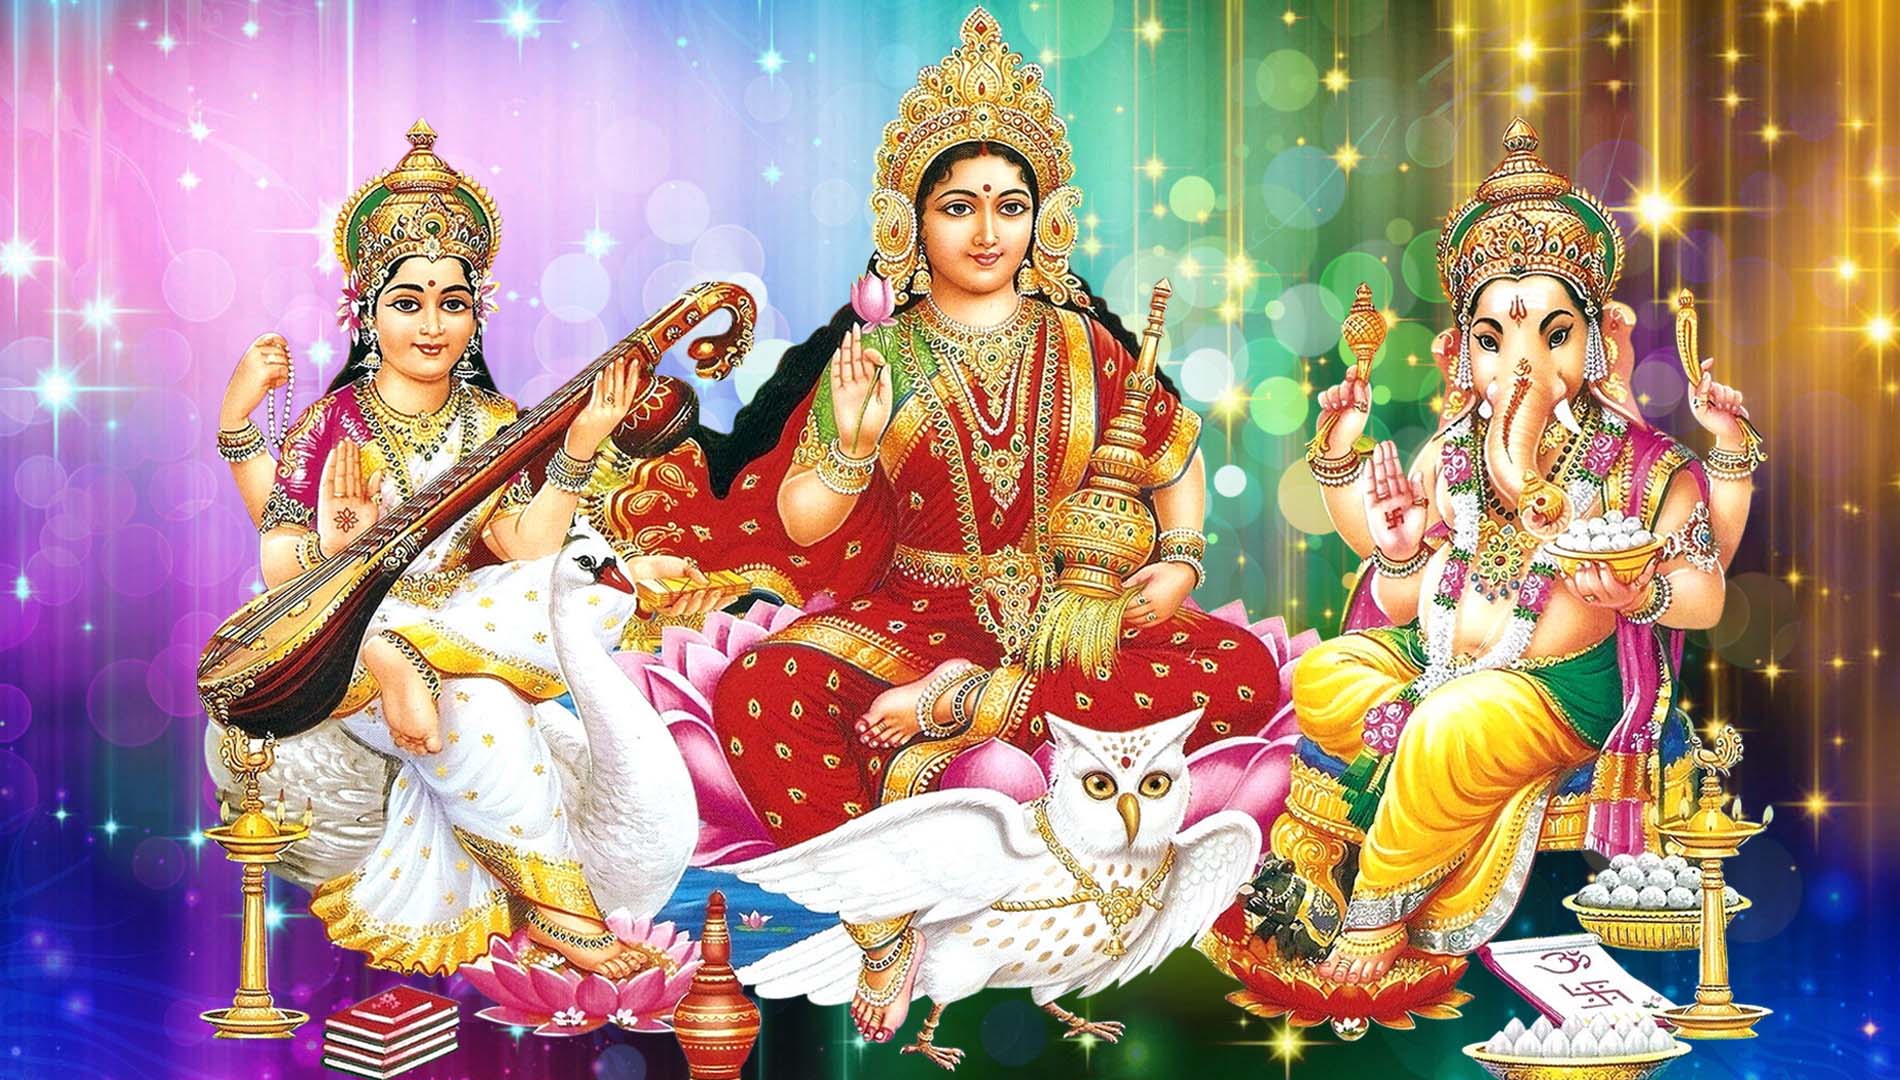 Lakshmi Ganesh Saraswati Desktop Wallpapers Hd - God HD Wallpapers